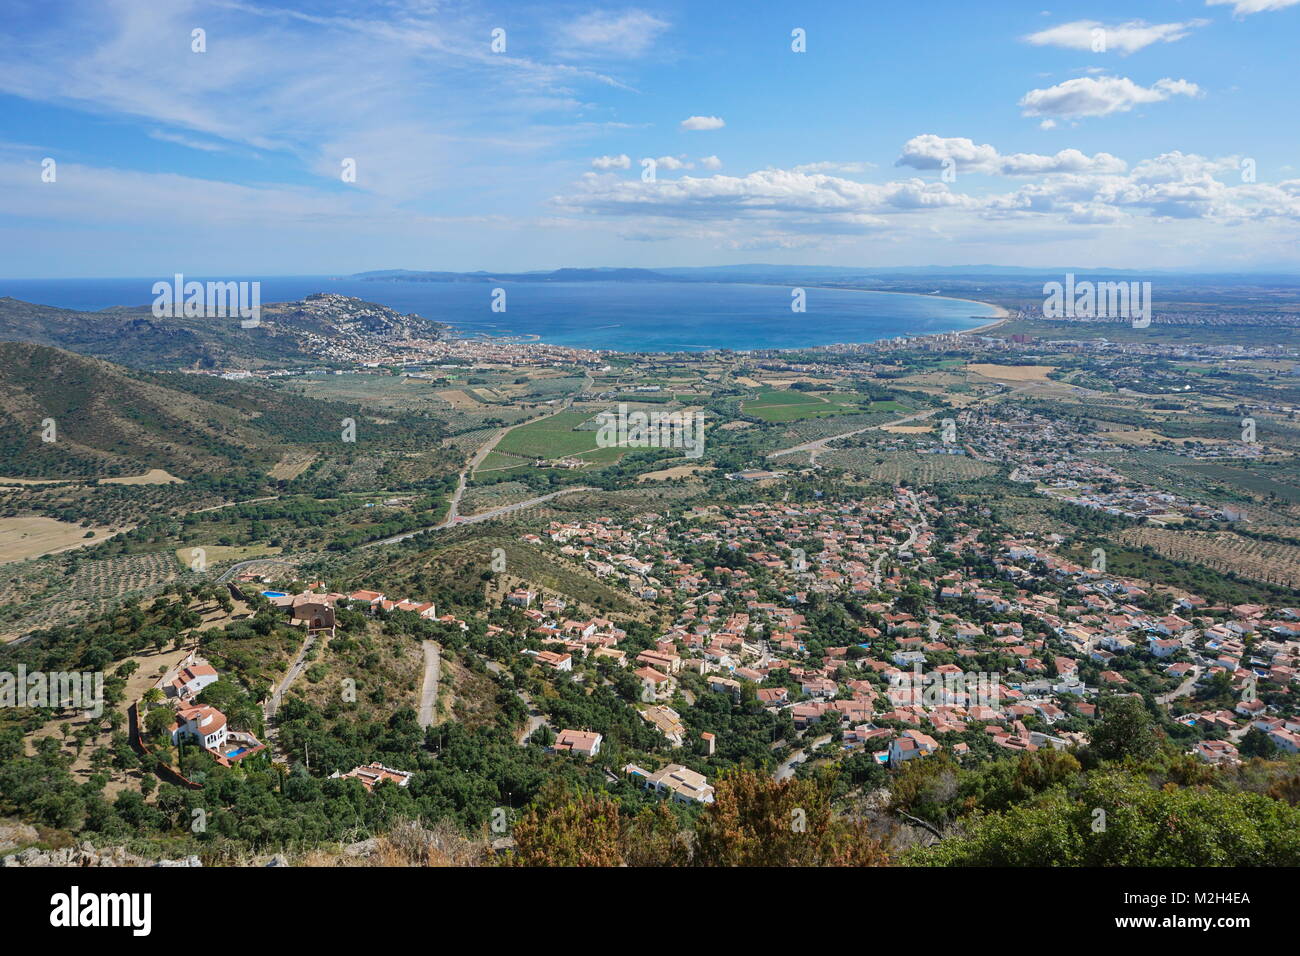 Spanien Costa Brava Landschaft die Bucht und die Stadt der Rosen vom Berg aus gesehen, Mittelmeer, Alt Emporda, Girona, Katalonien Stockfoto